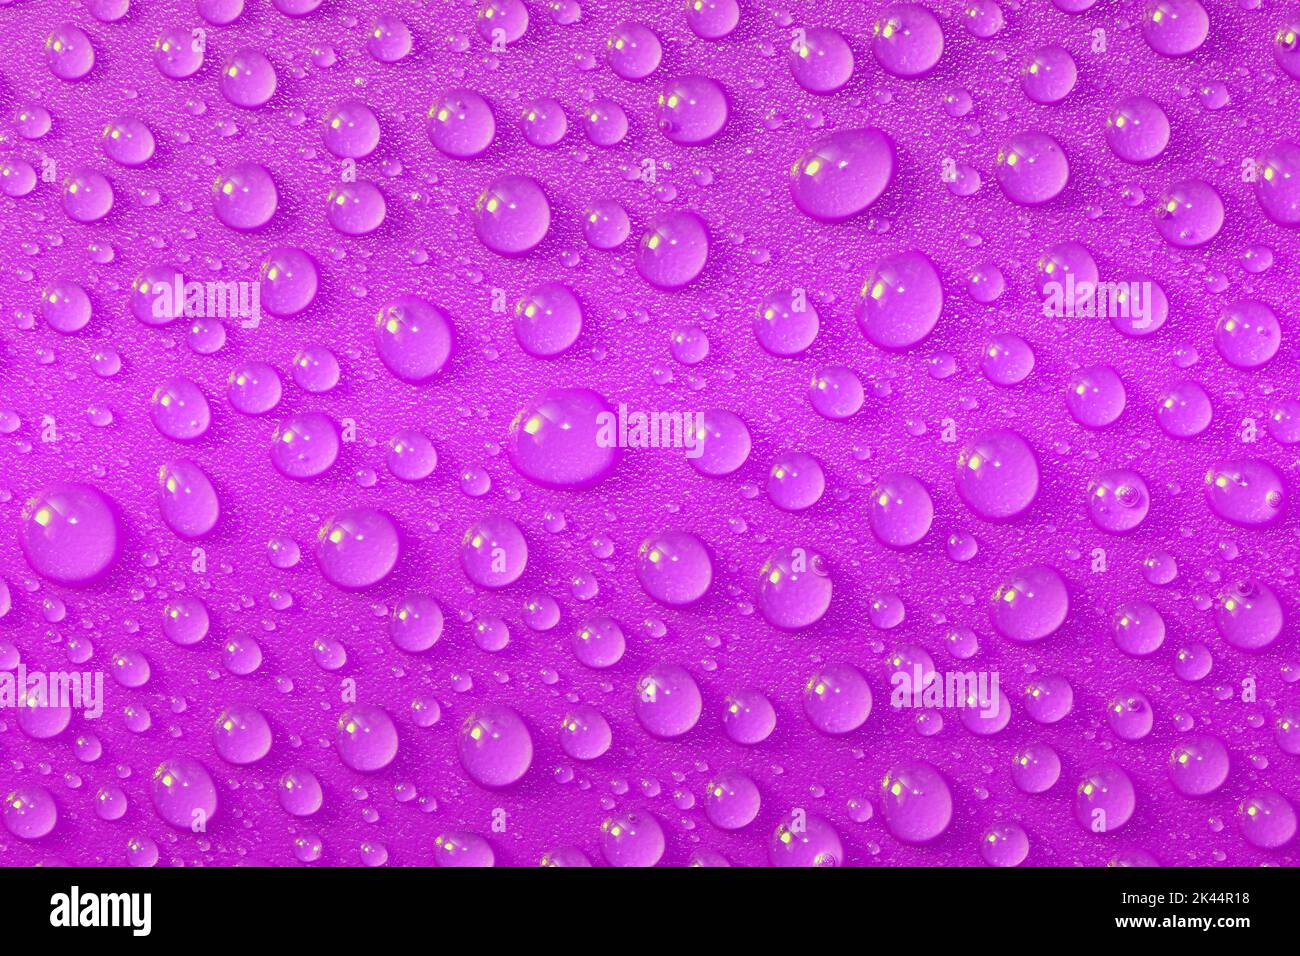 Un gros plan de gouttelettes d'eau roses sur une surface en plastique rose brillant donnant un aspect frais, éclatant et étincelant, capturé dans un studio Banque D'Images